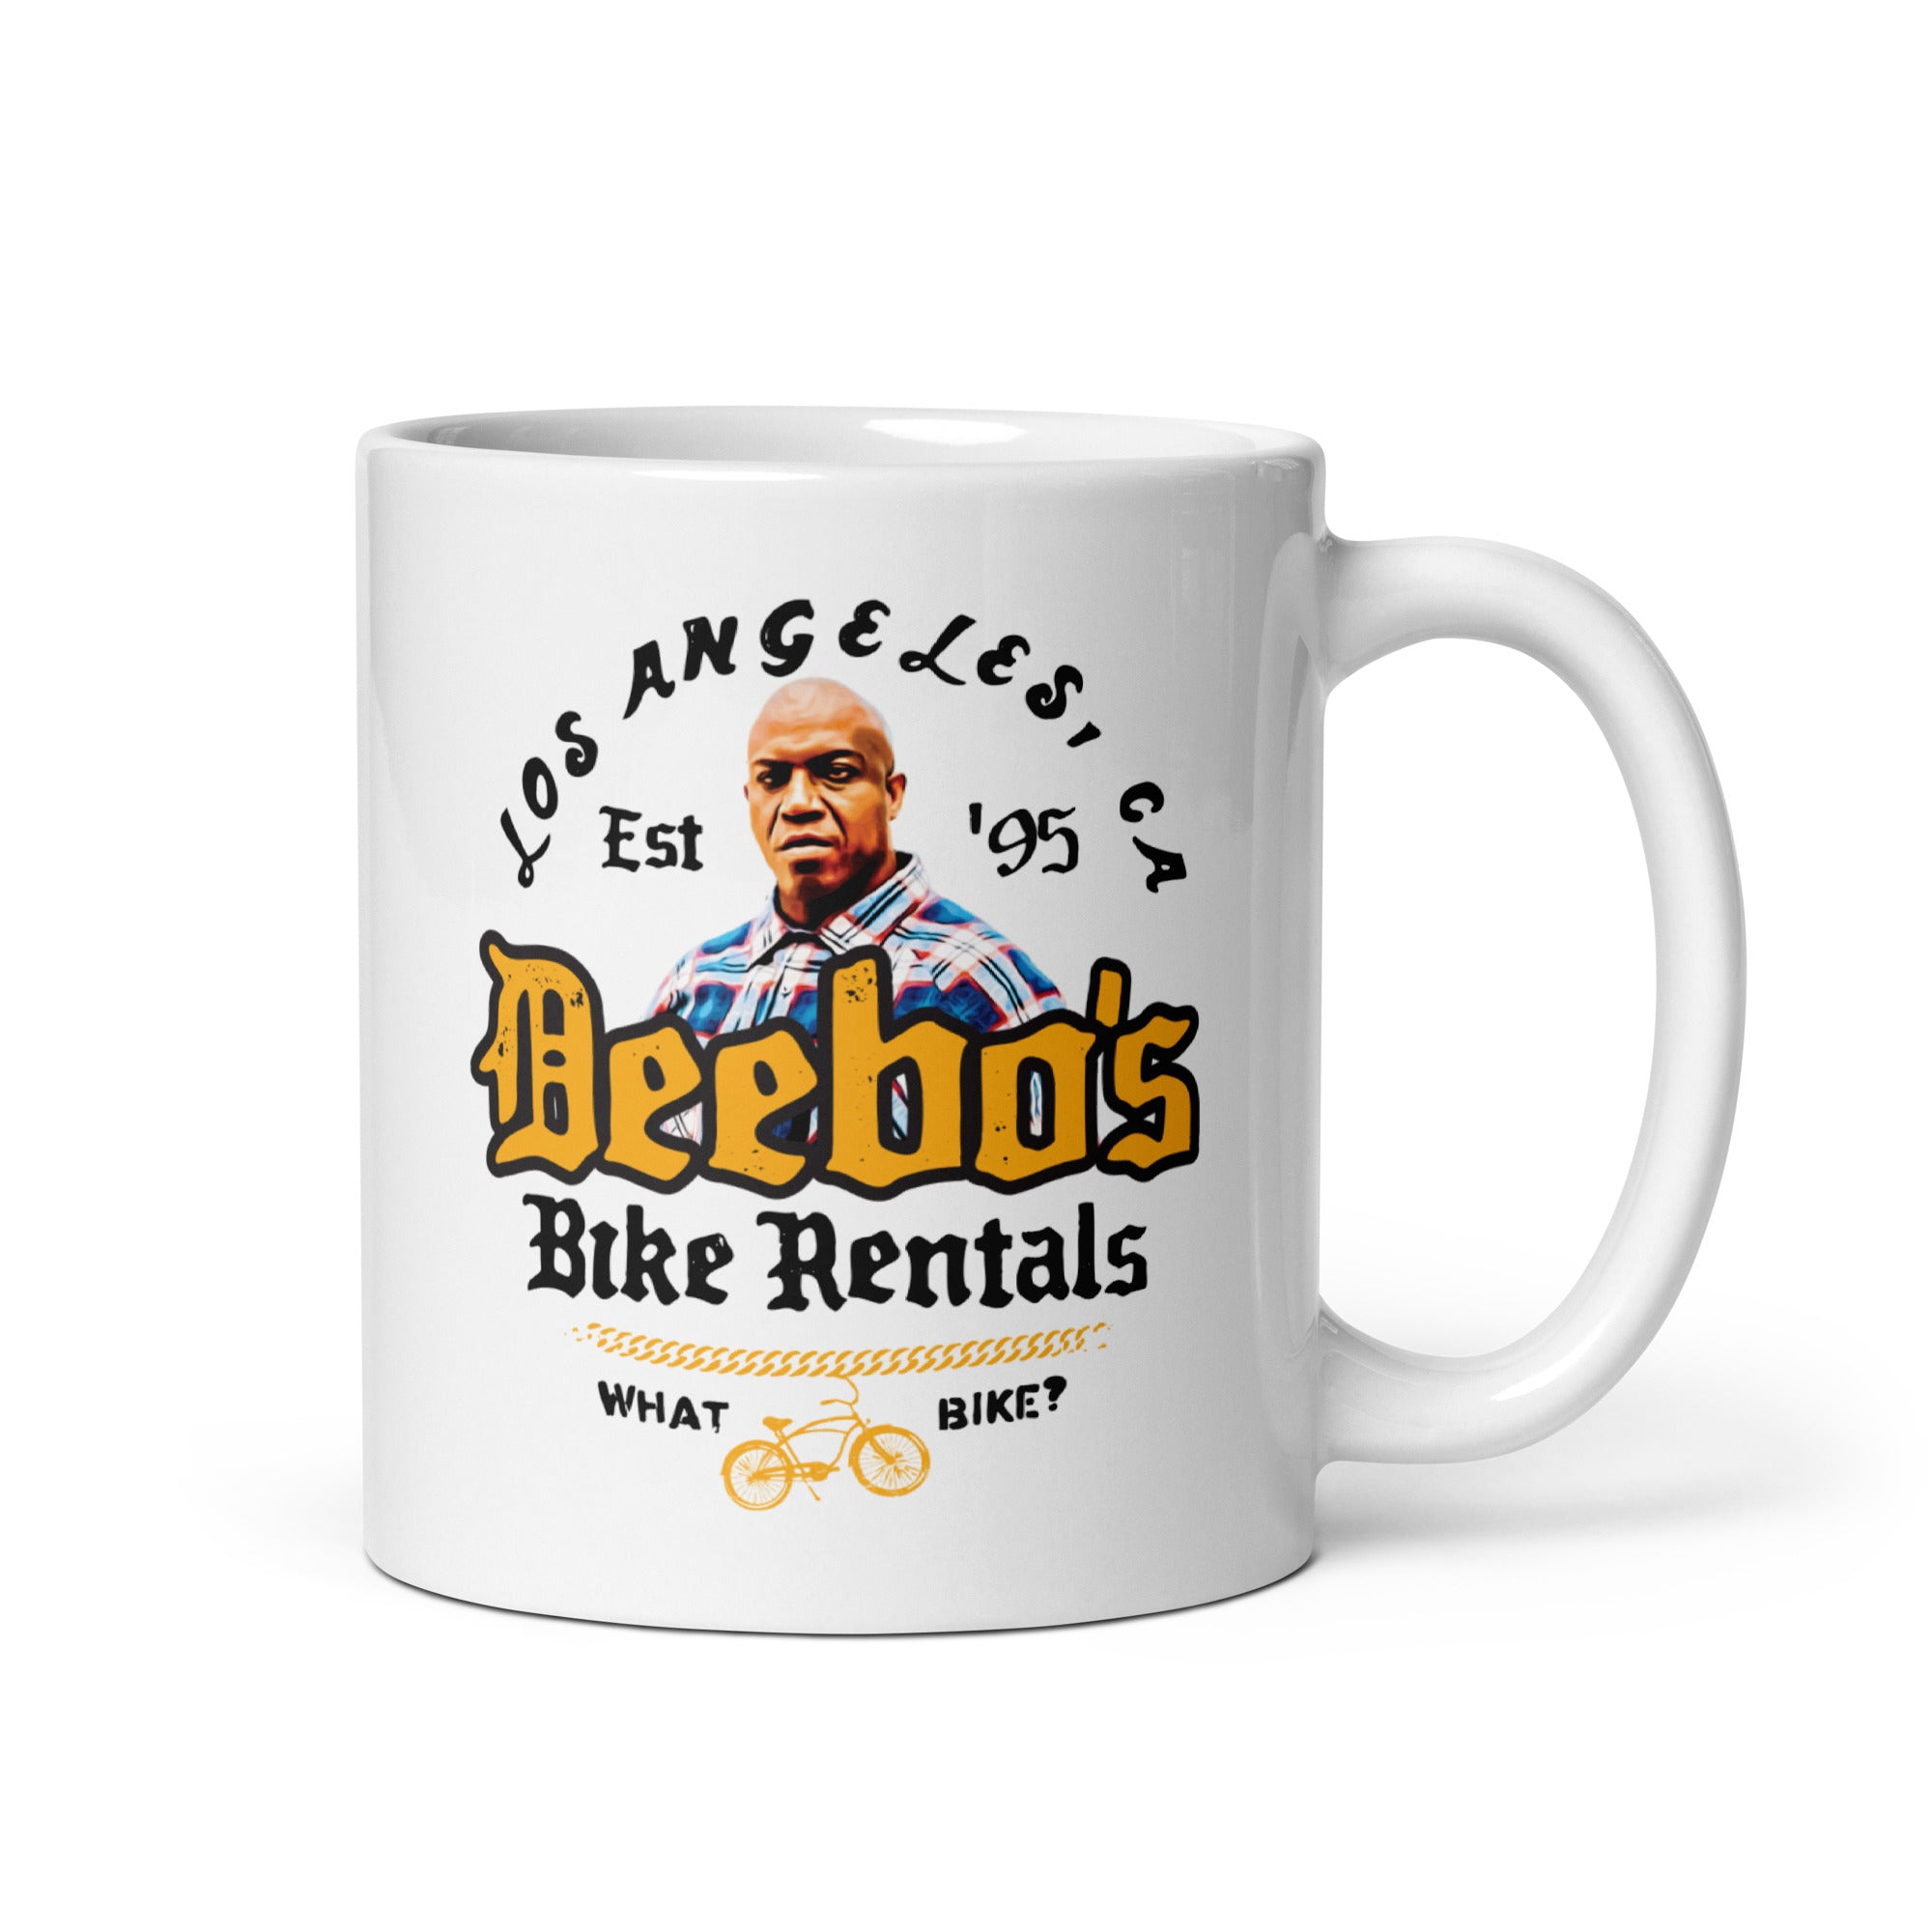 Deebo's Bike Rentals - What Bike? - 11oz Coffee Mug